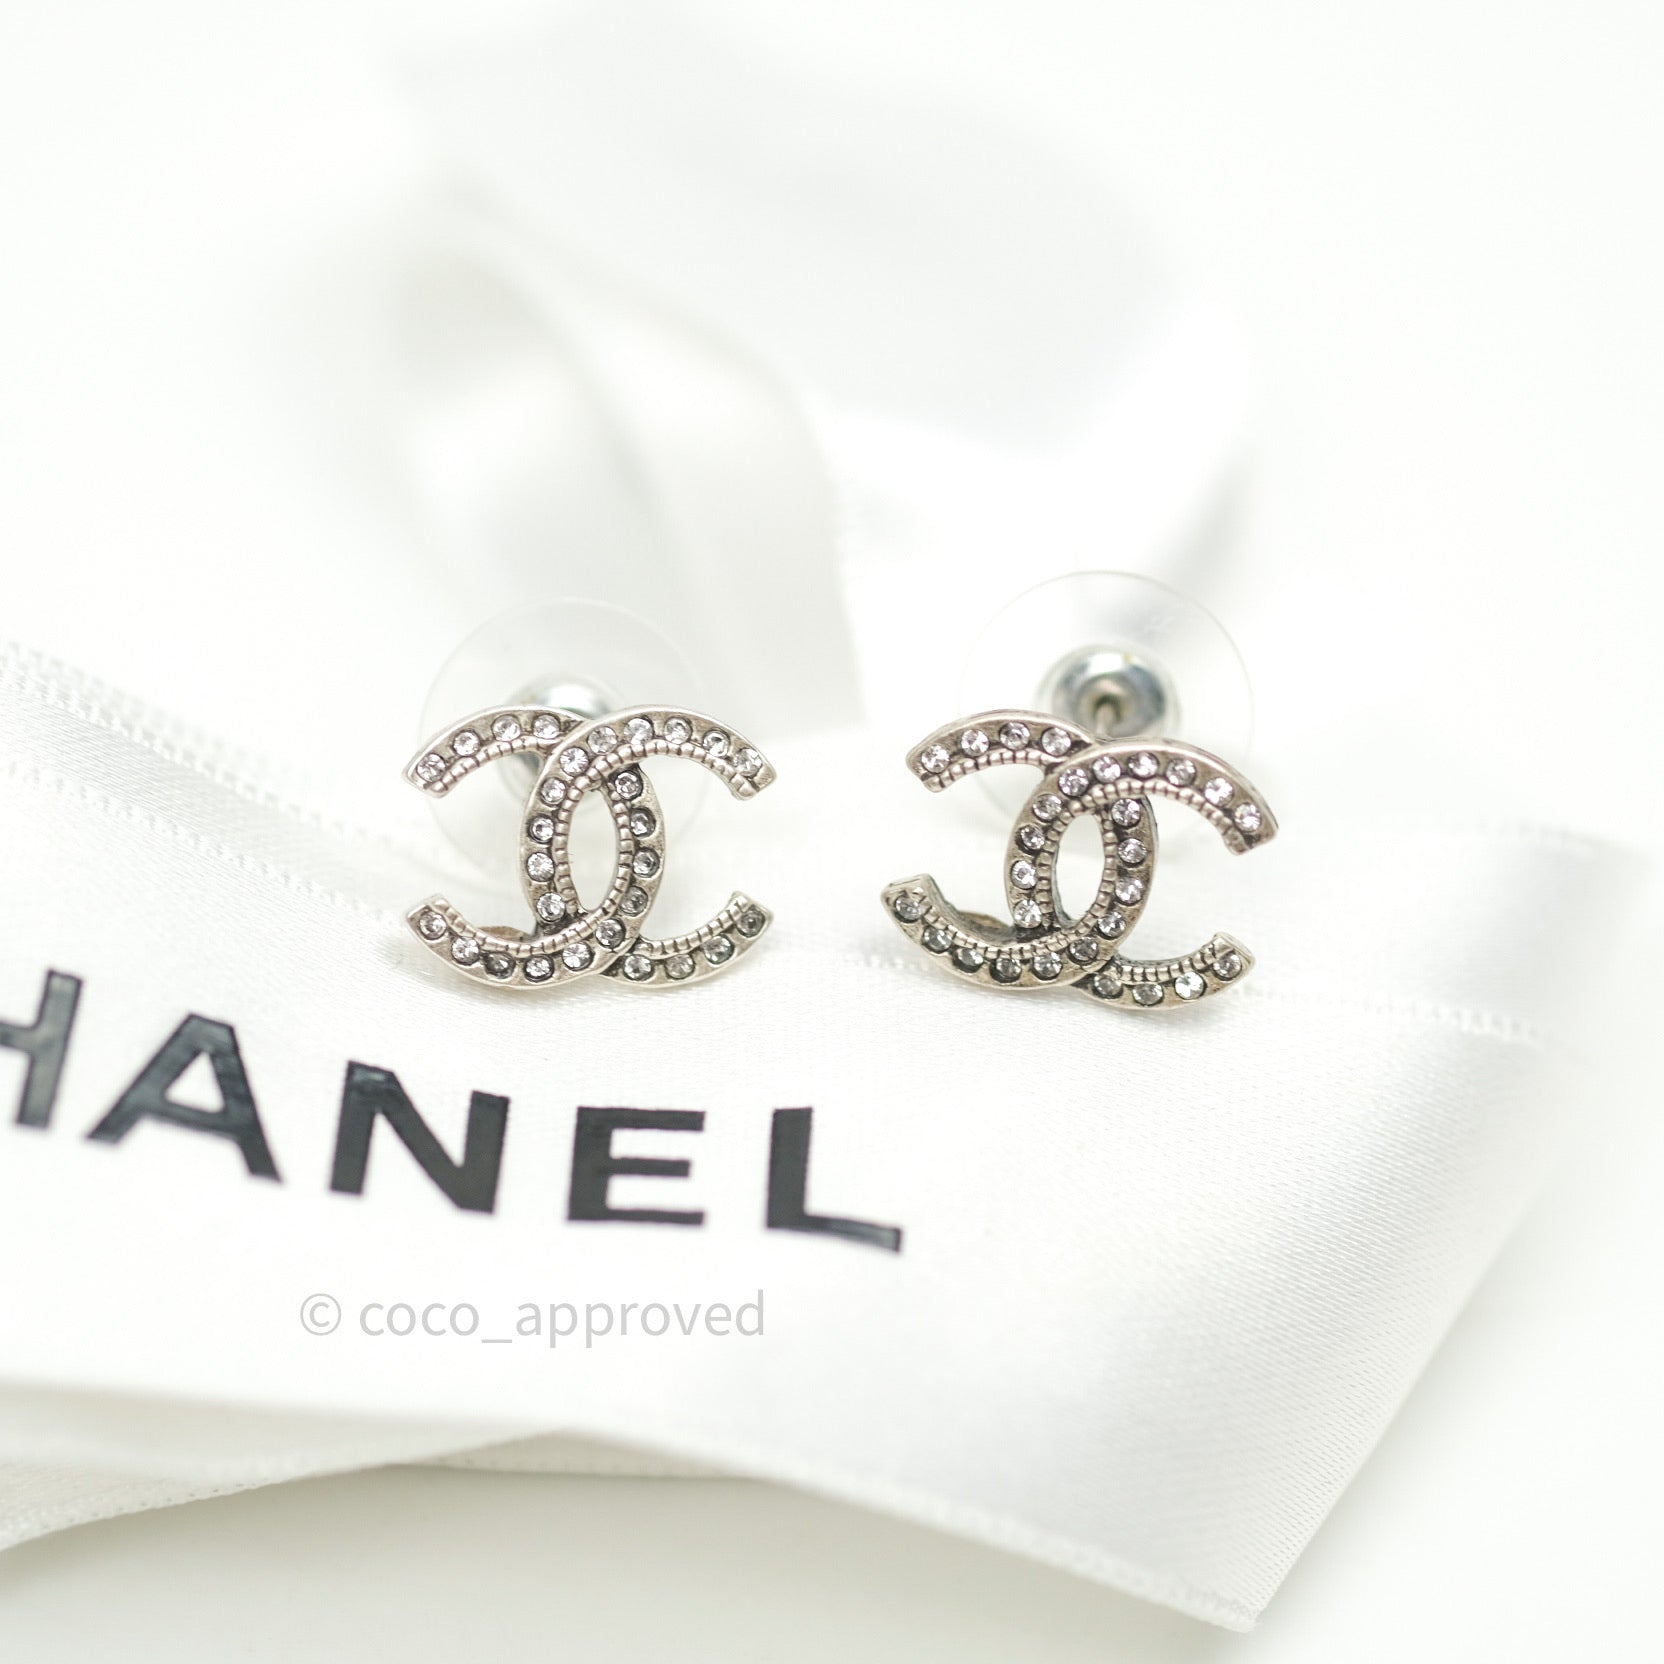 Chanel earring rhinestone silver - Gem